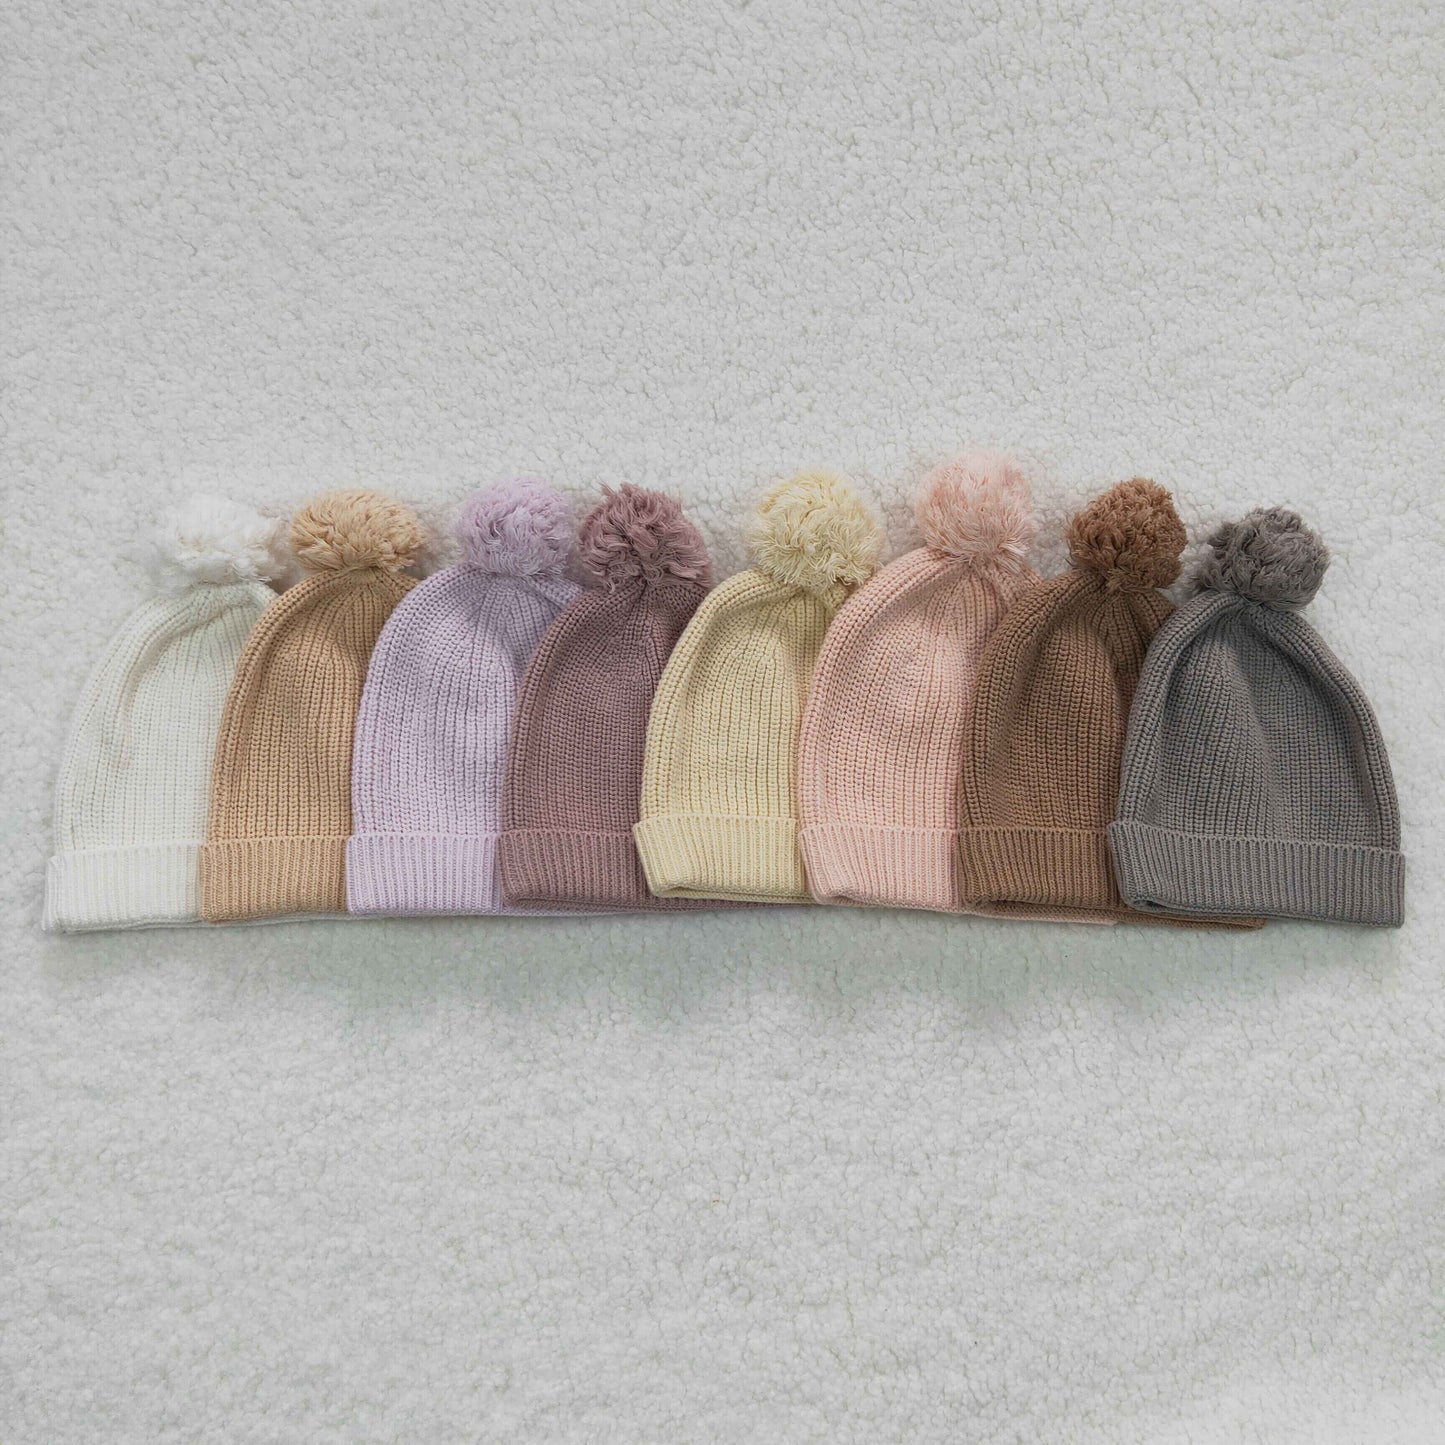 Lavender wool winter hats